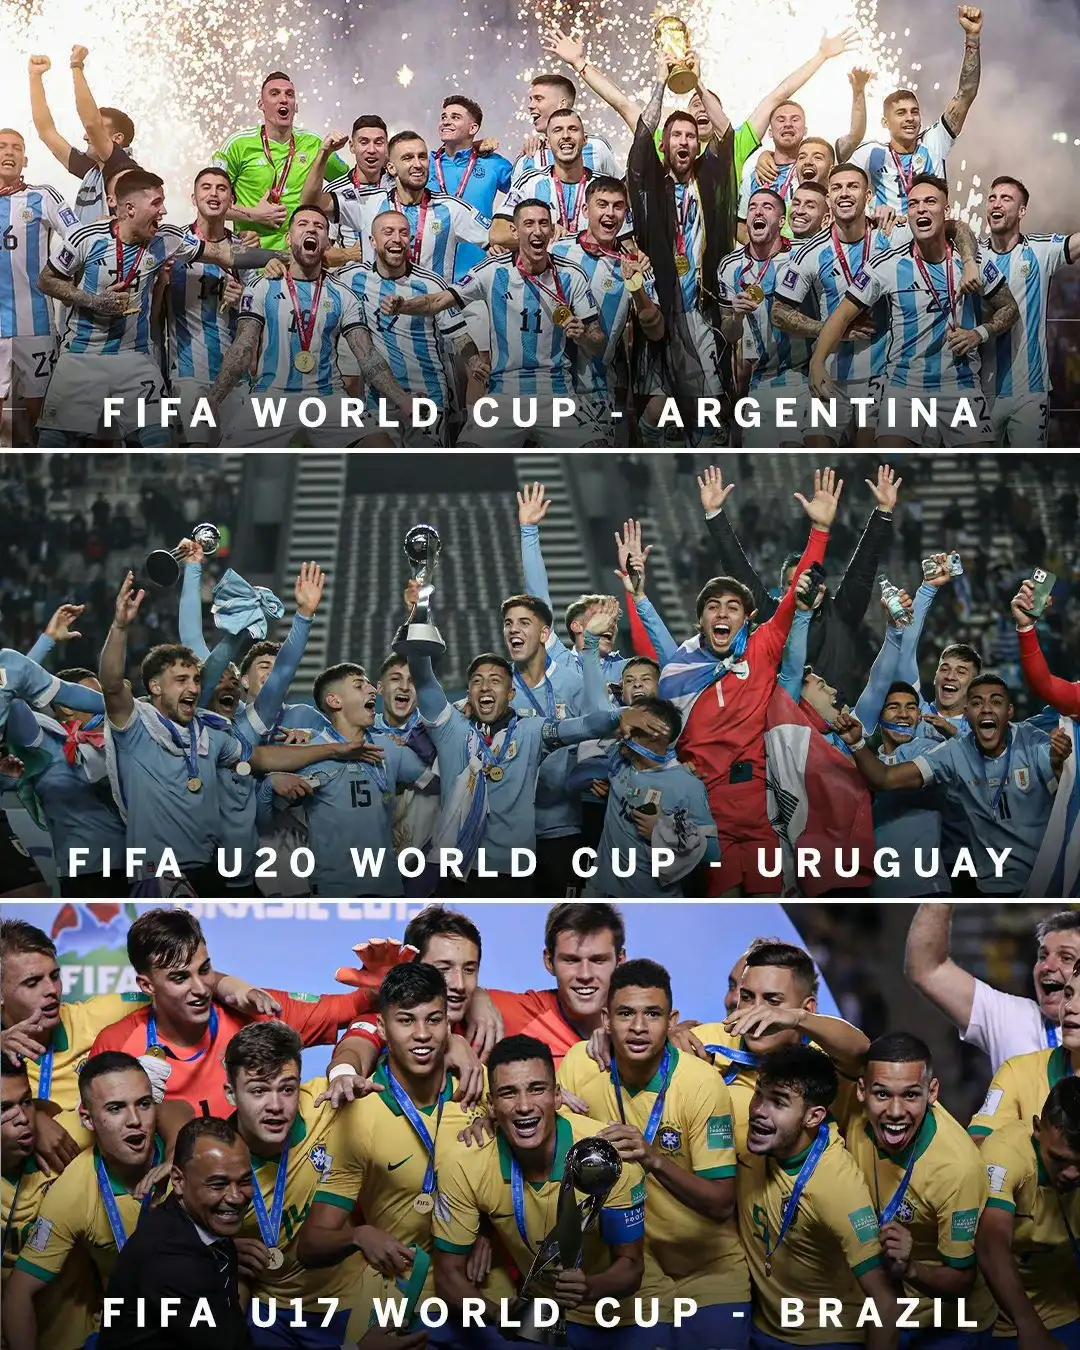 谁说南美足球不行的，他们拿到所有级别冠军。

去年阿根廷是世界杯冠军。

刚刚乌(1)